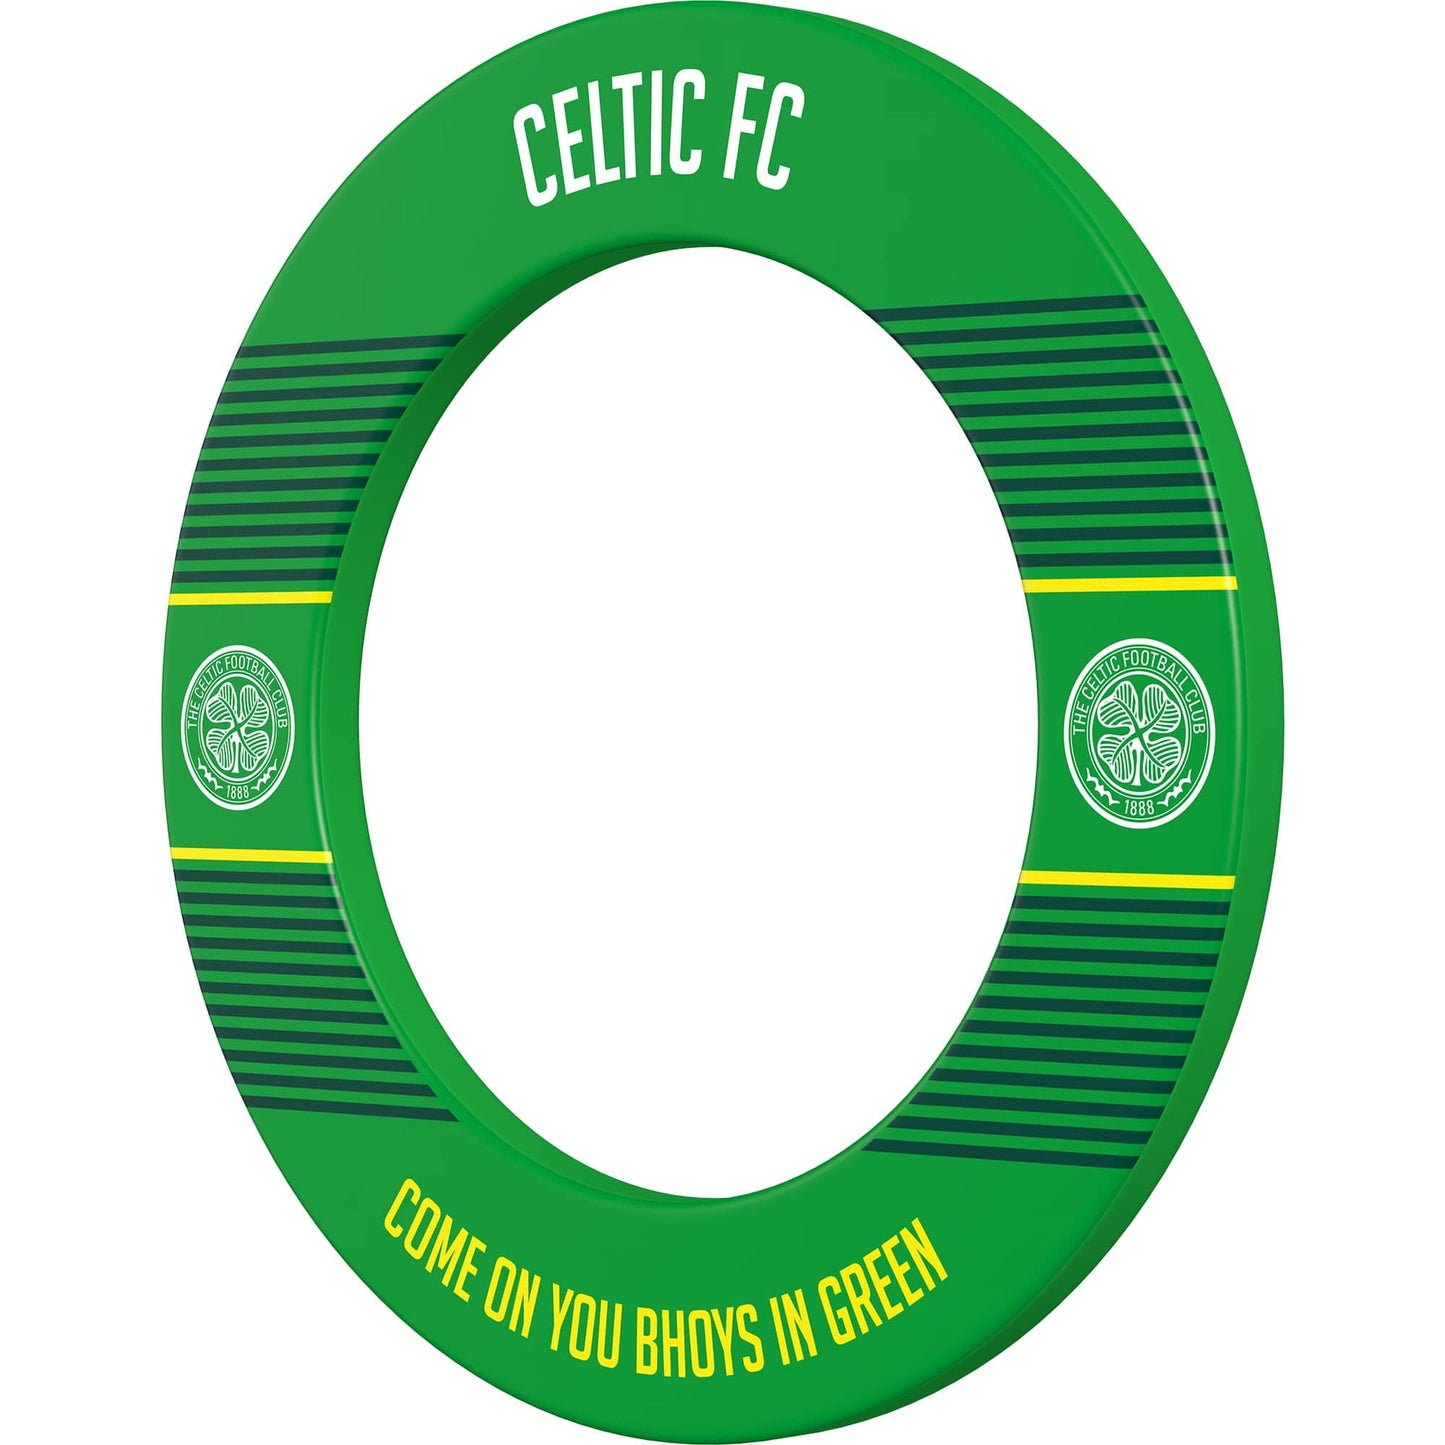 Celtic FC Dartboard Surround - Official Licensed - Celtic - S1 - COYB